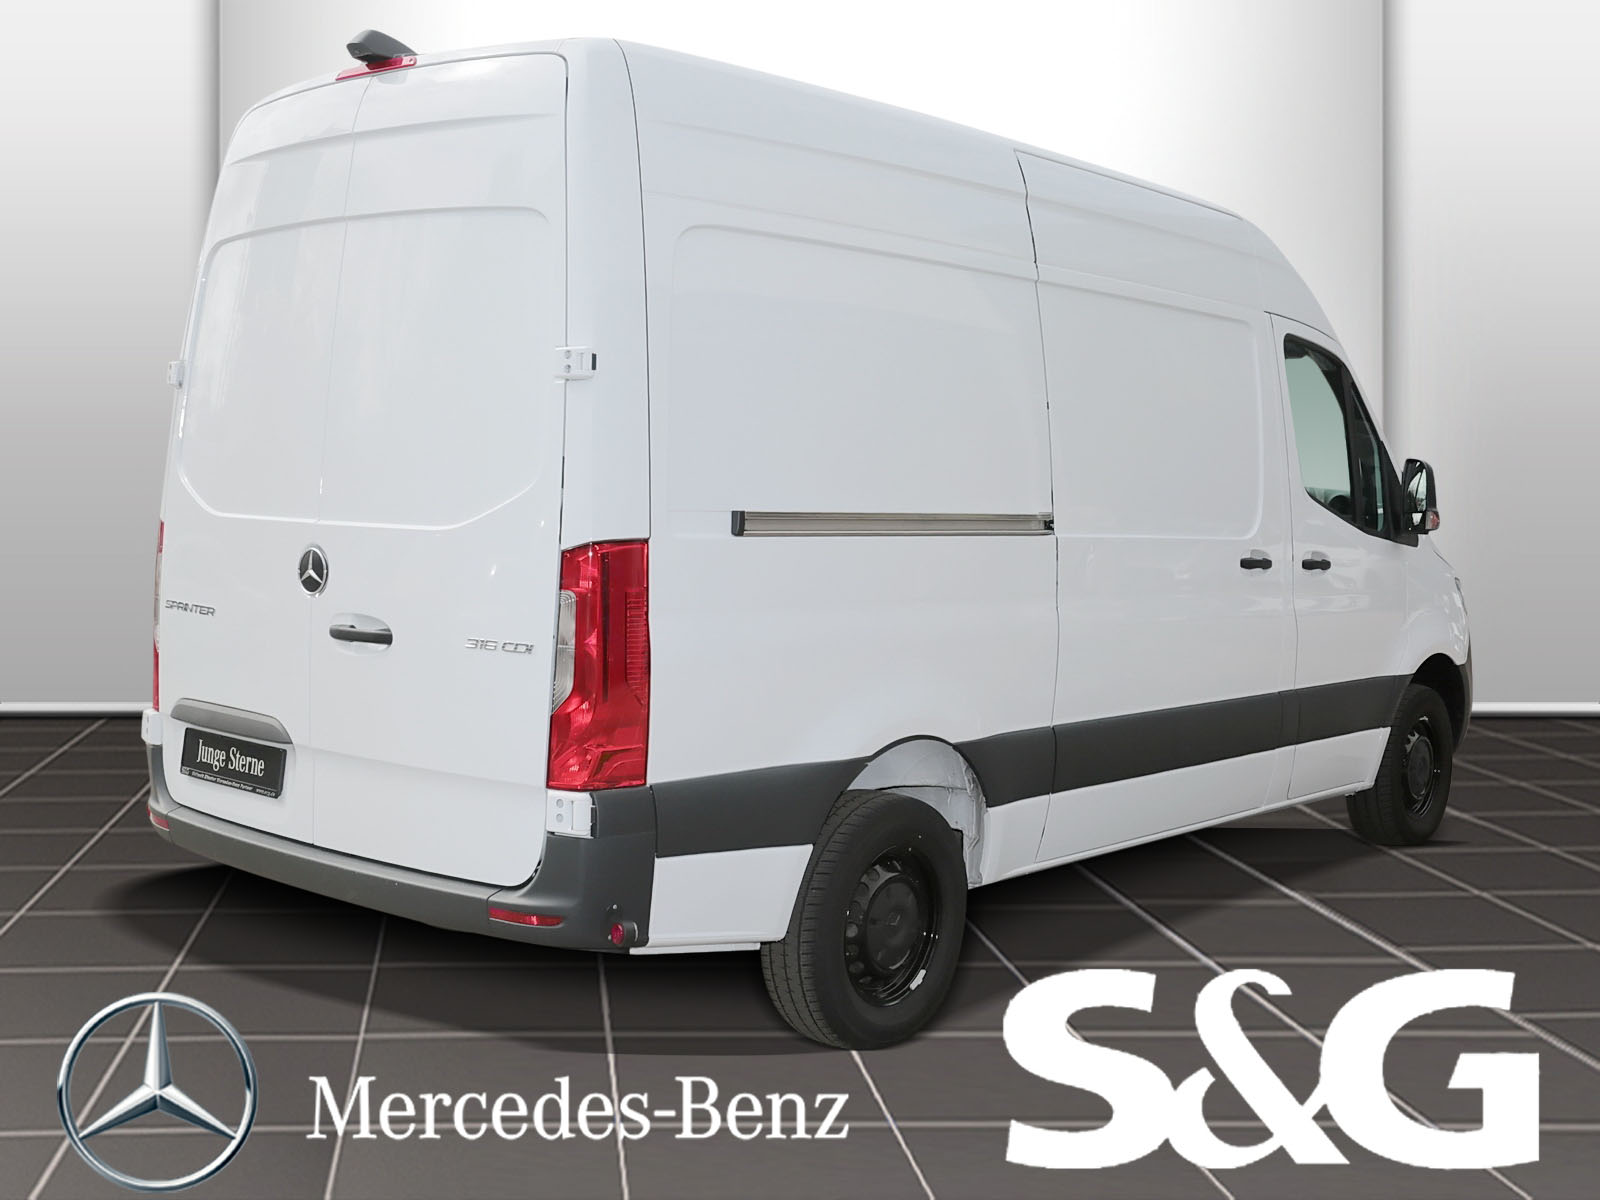 S&G - Fahrzeug Detailansicht - Ihr Autohaus für Mercedes-Benz und smart.